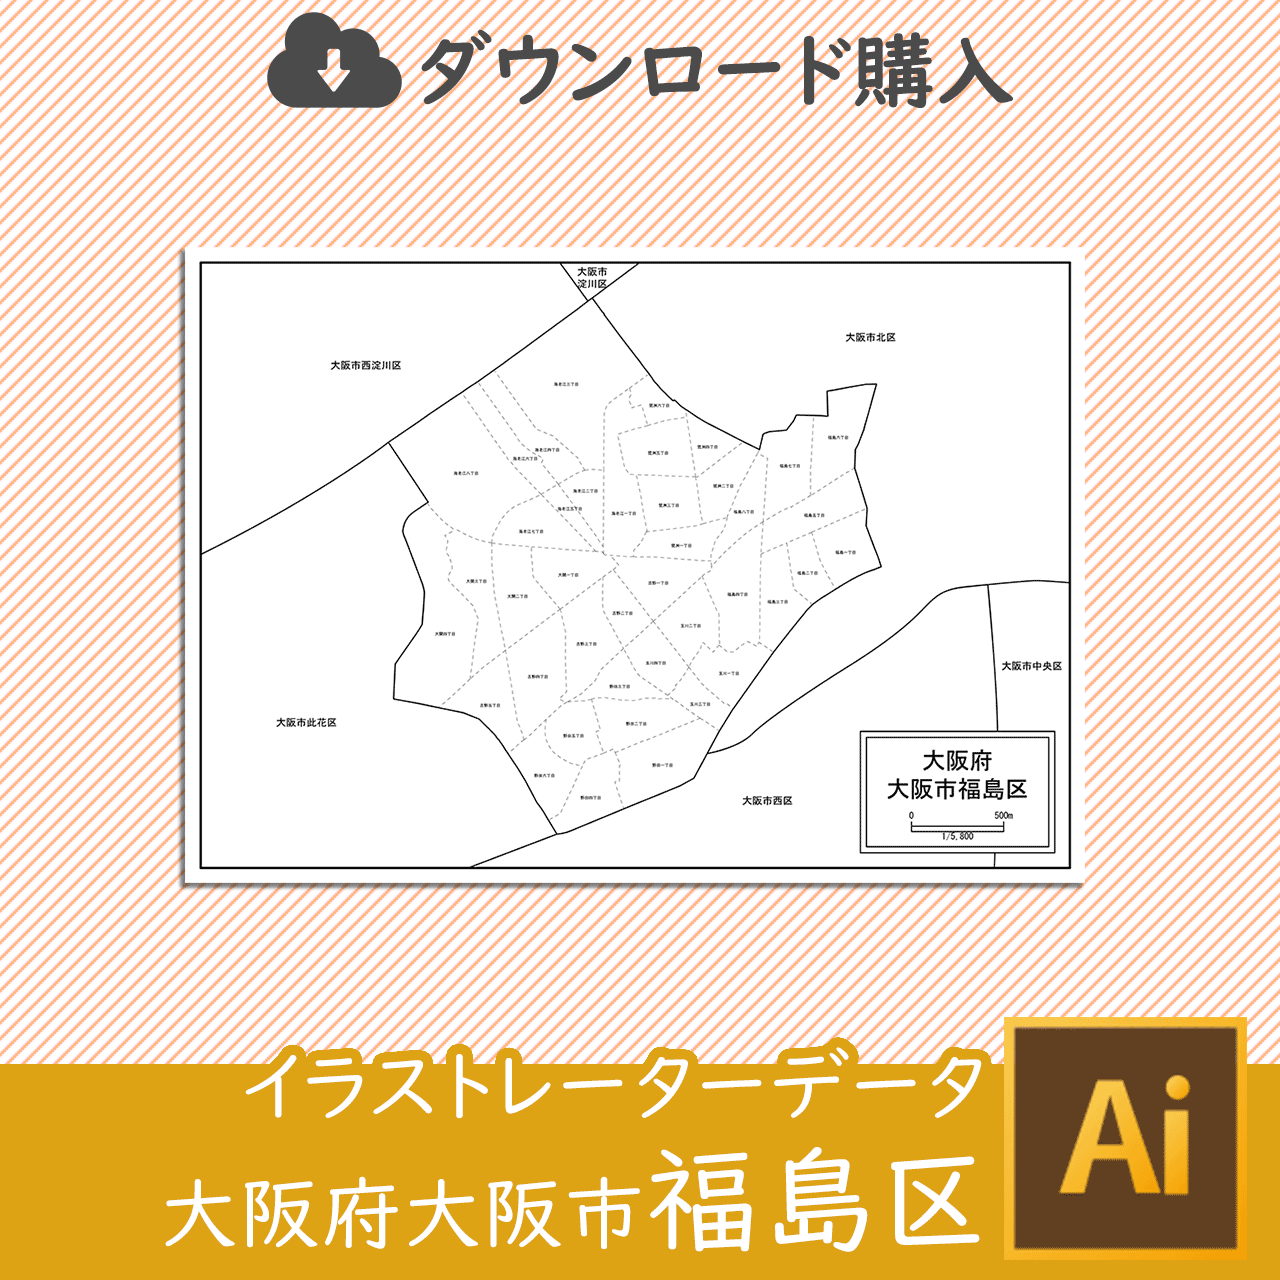 大阪市福島区のaiデータのサムネイル画像